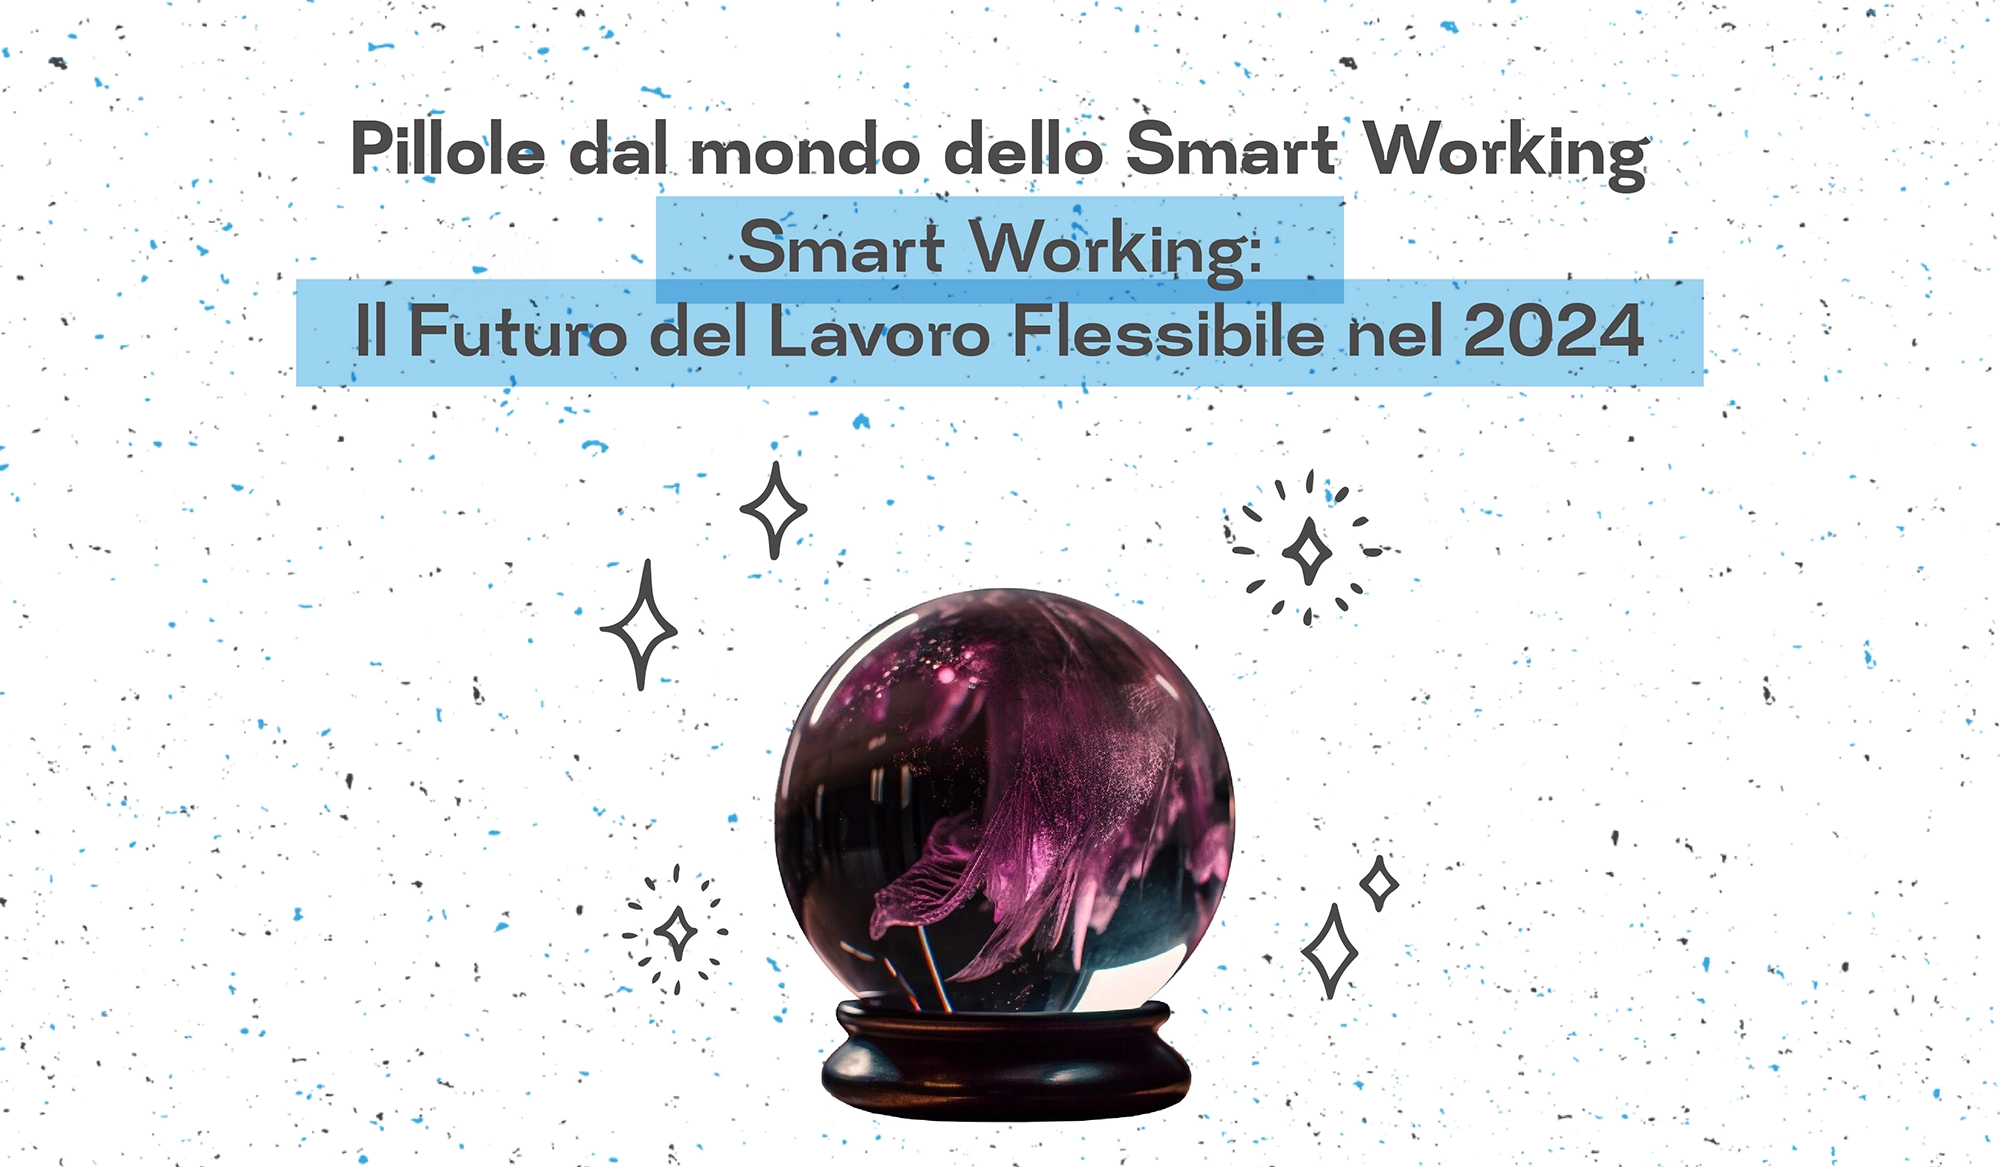 Smart working: il futuro del lavoro flessibile nel 2024